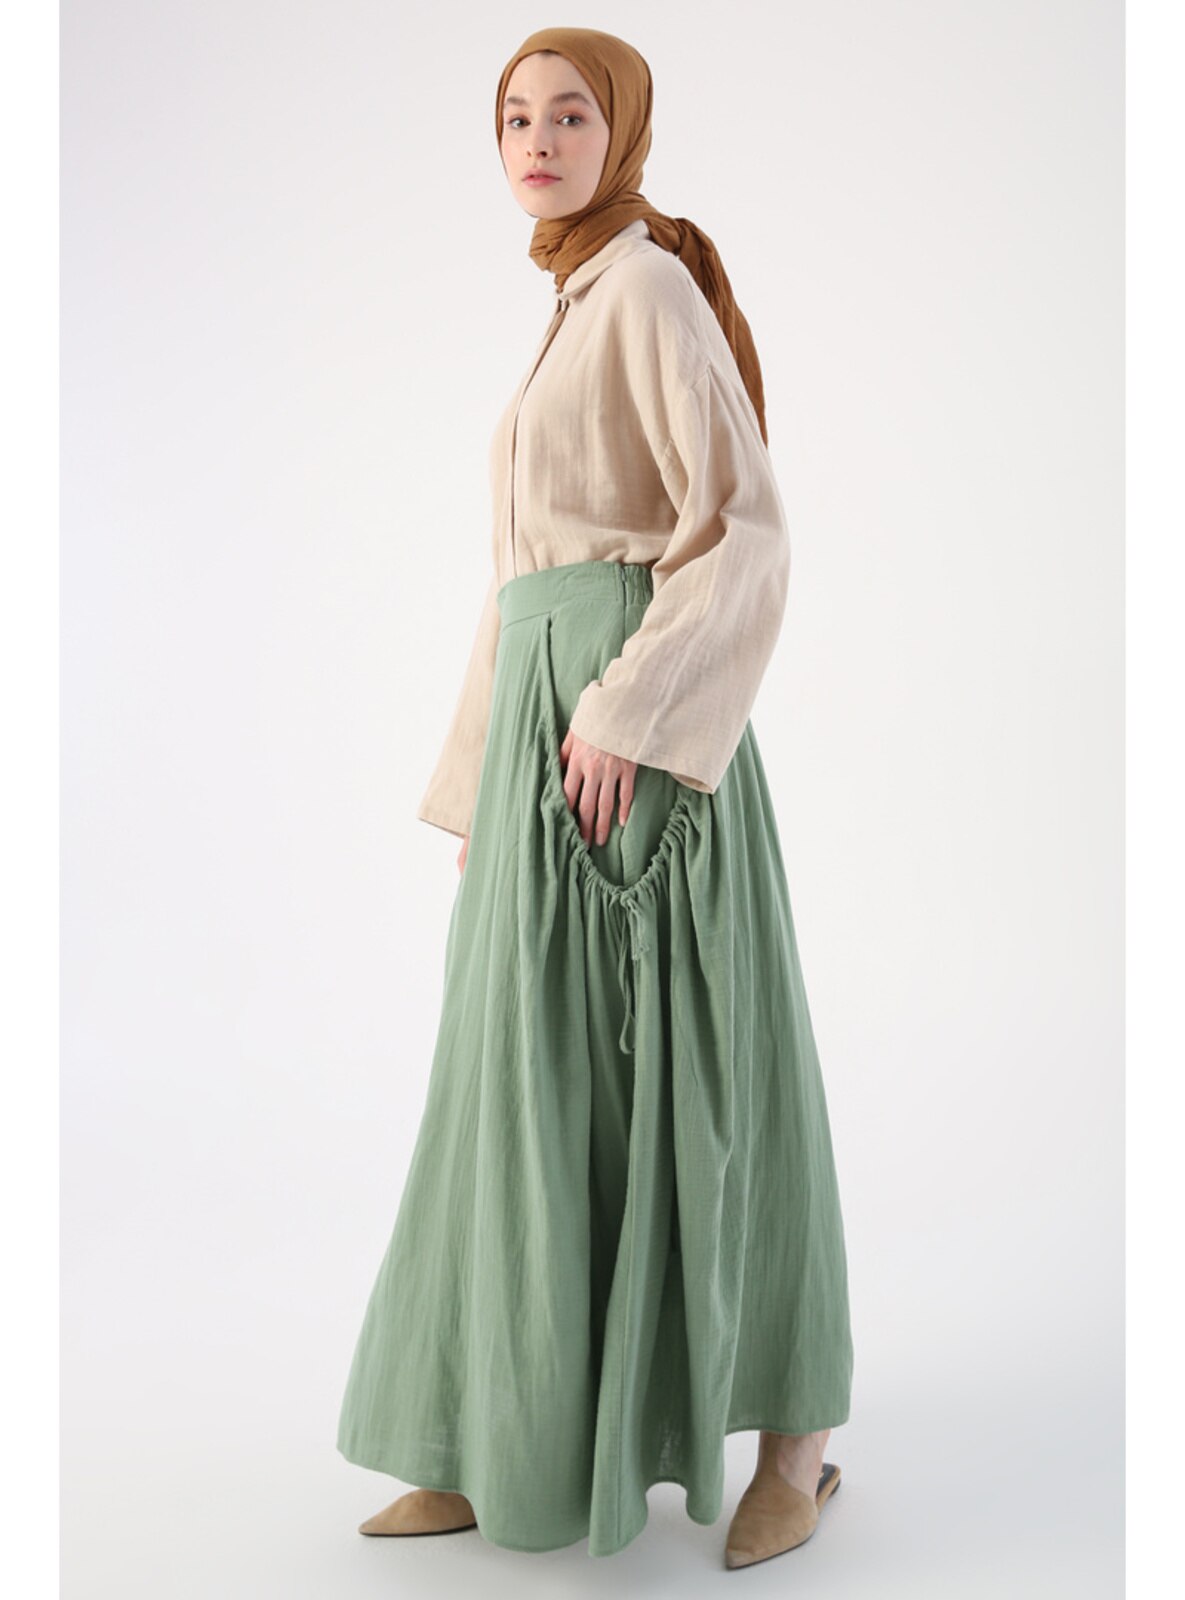 Green - Fully Lined - Skirt